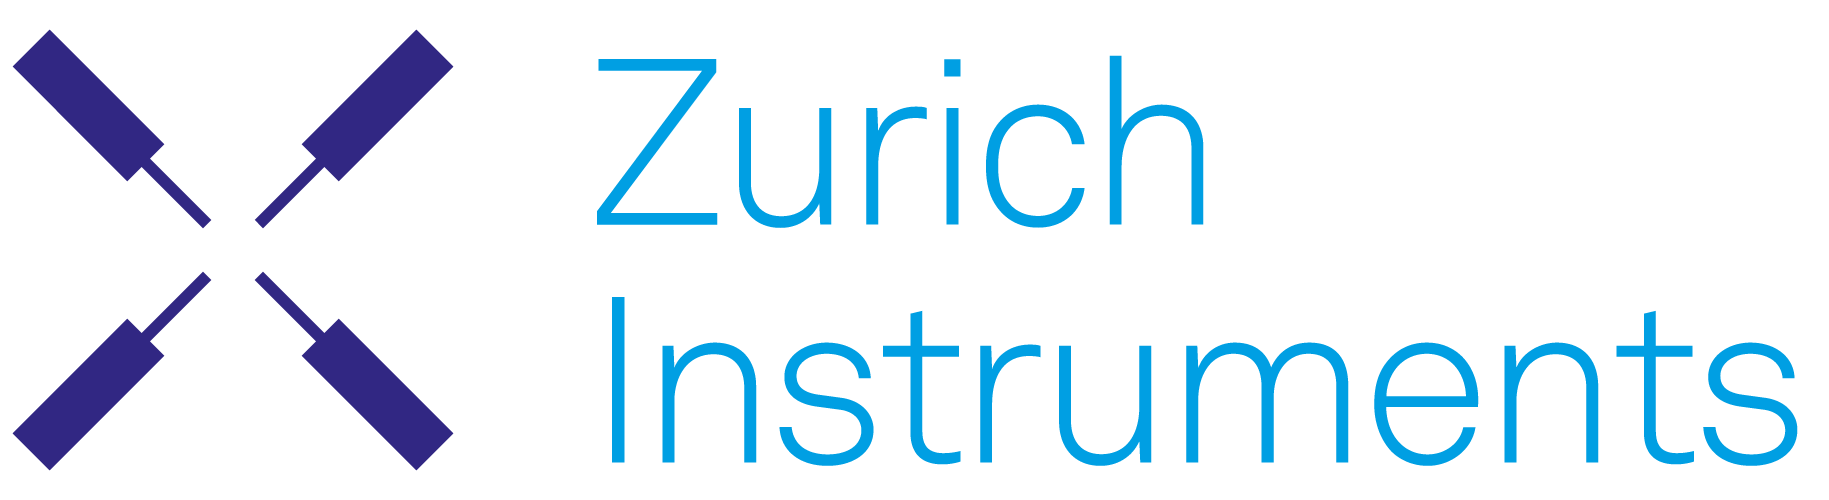 Zürichi instrumendid